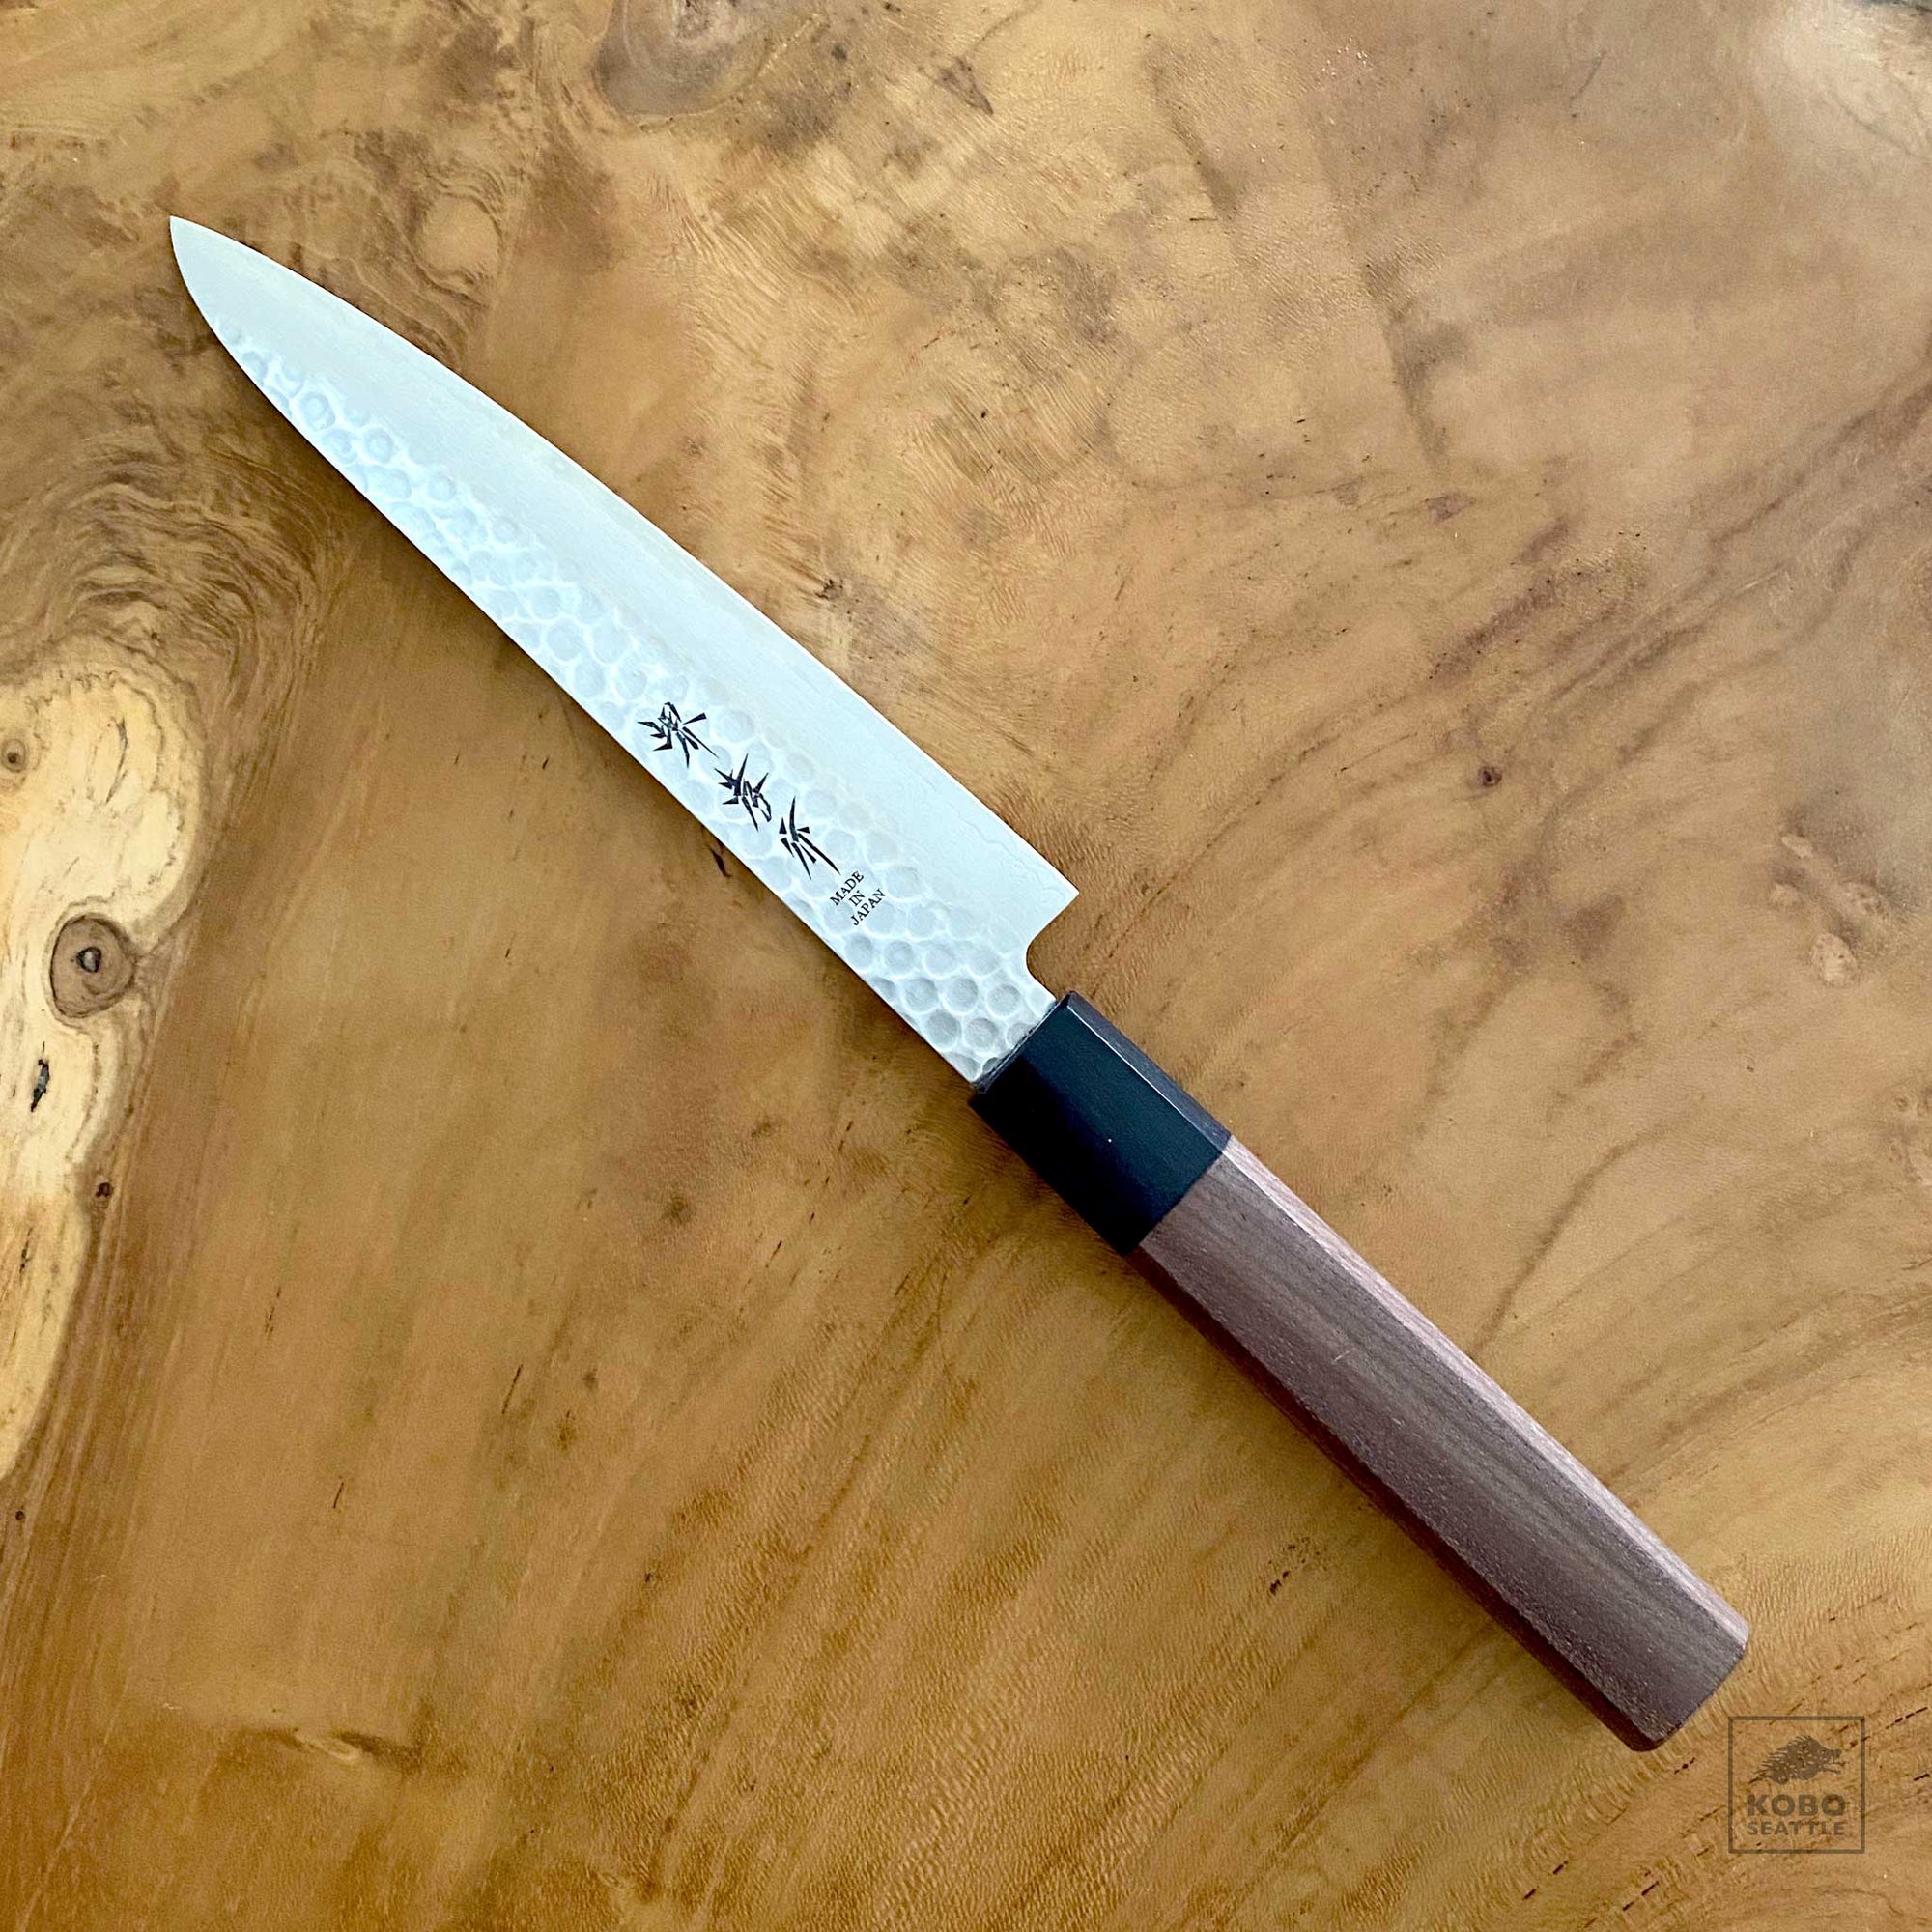 Japanese Utility Knife with Walnut Handle